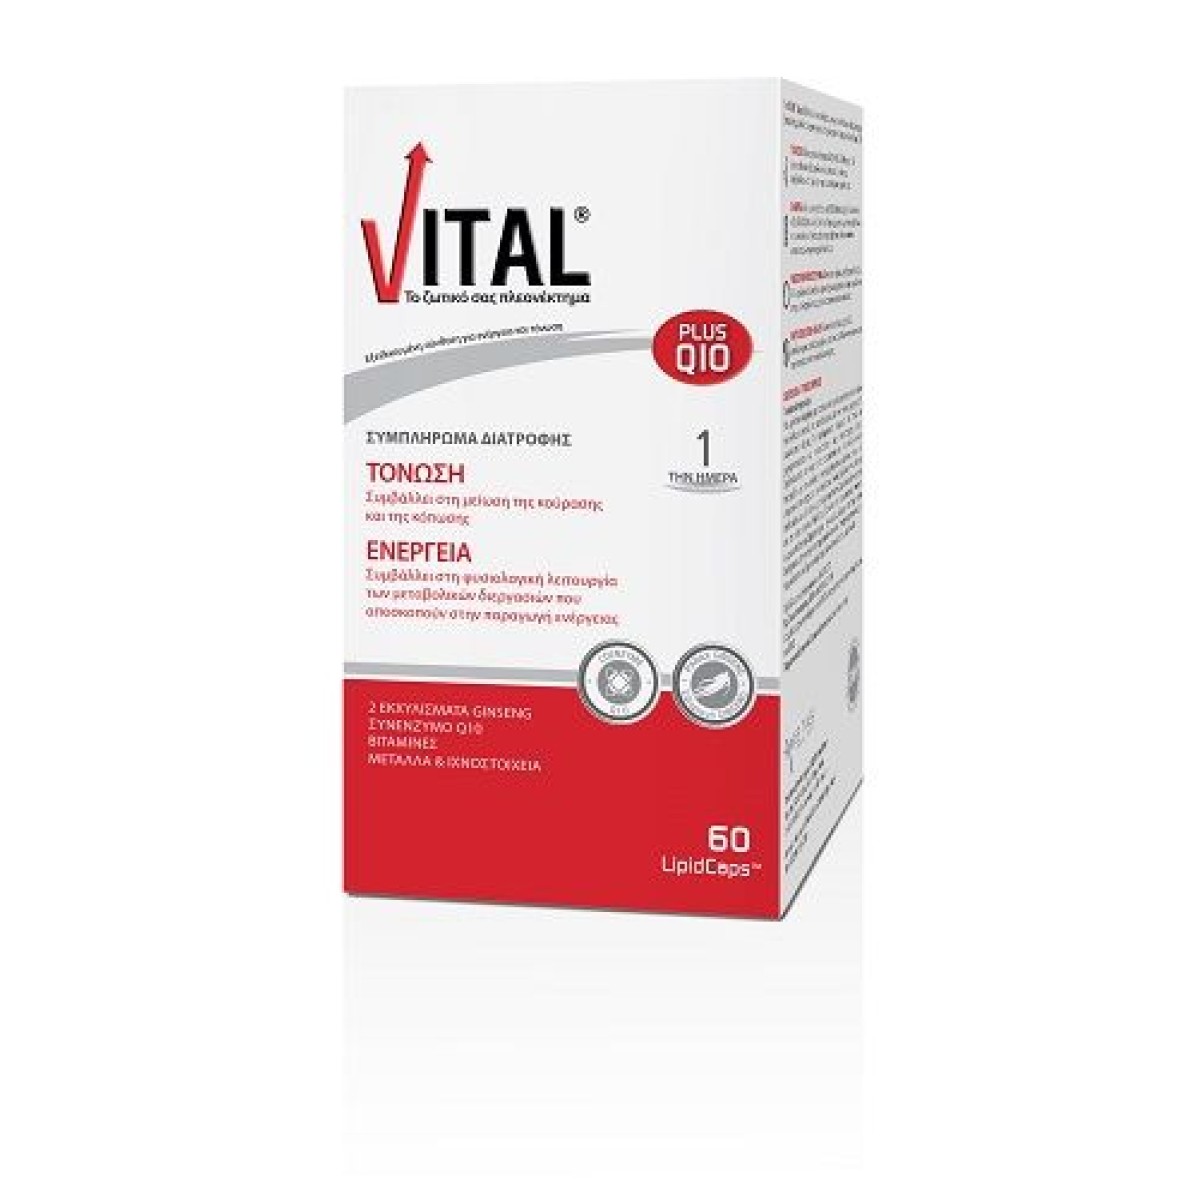 Vital | Plus Q10 | Συμπλήρωμα Διατροφής  Πολυβιταμίνη  με Q10 | 60 Κάψουλες